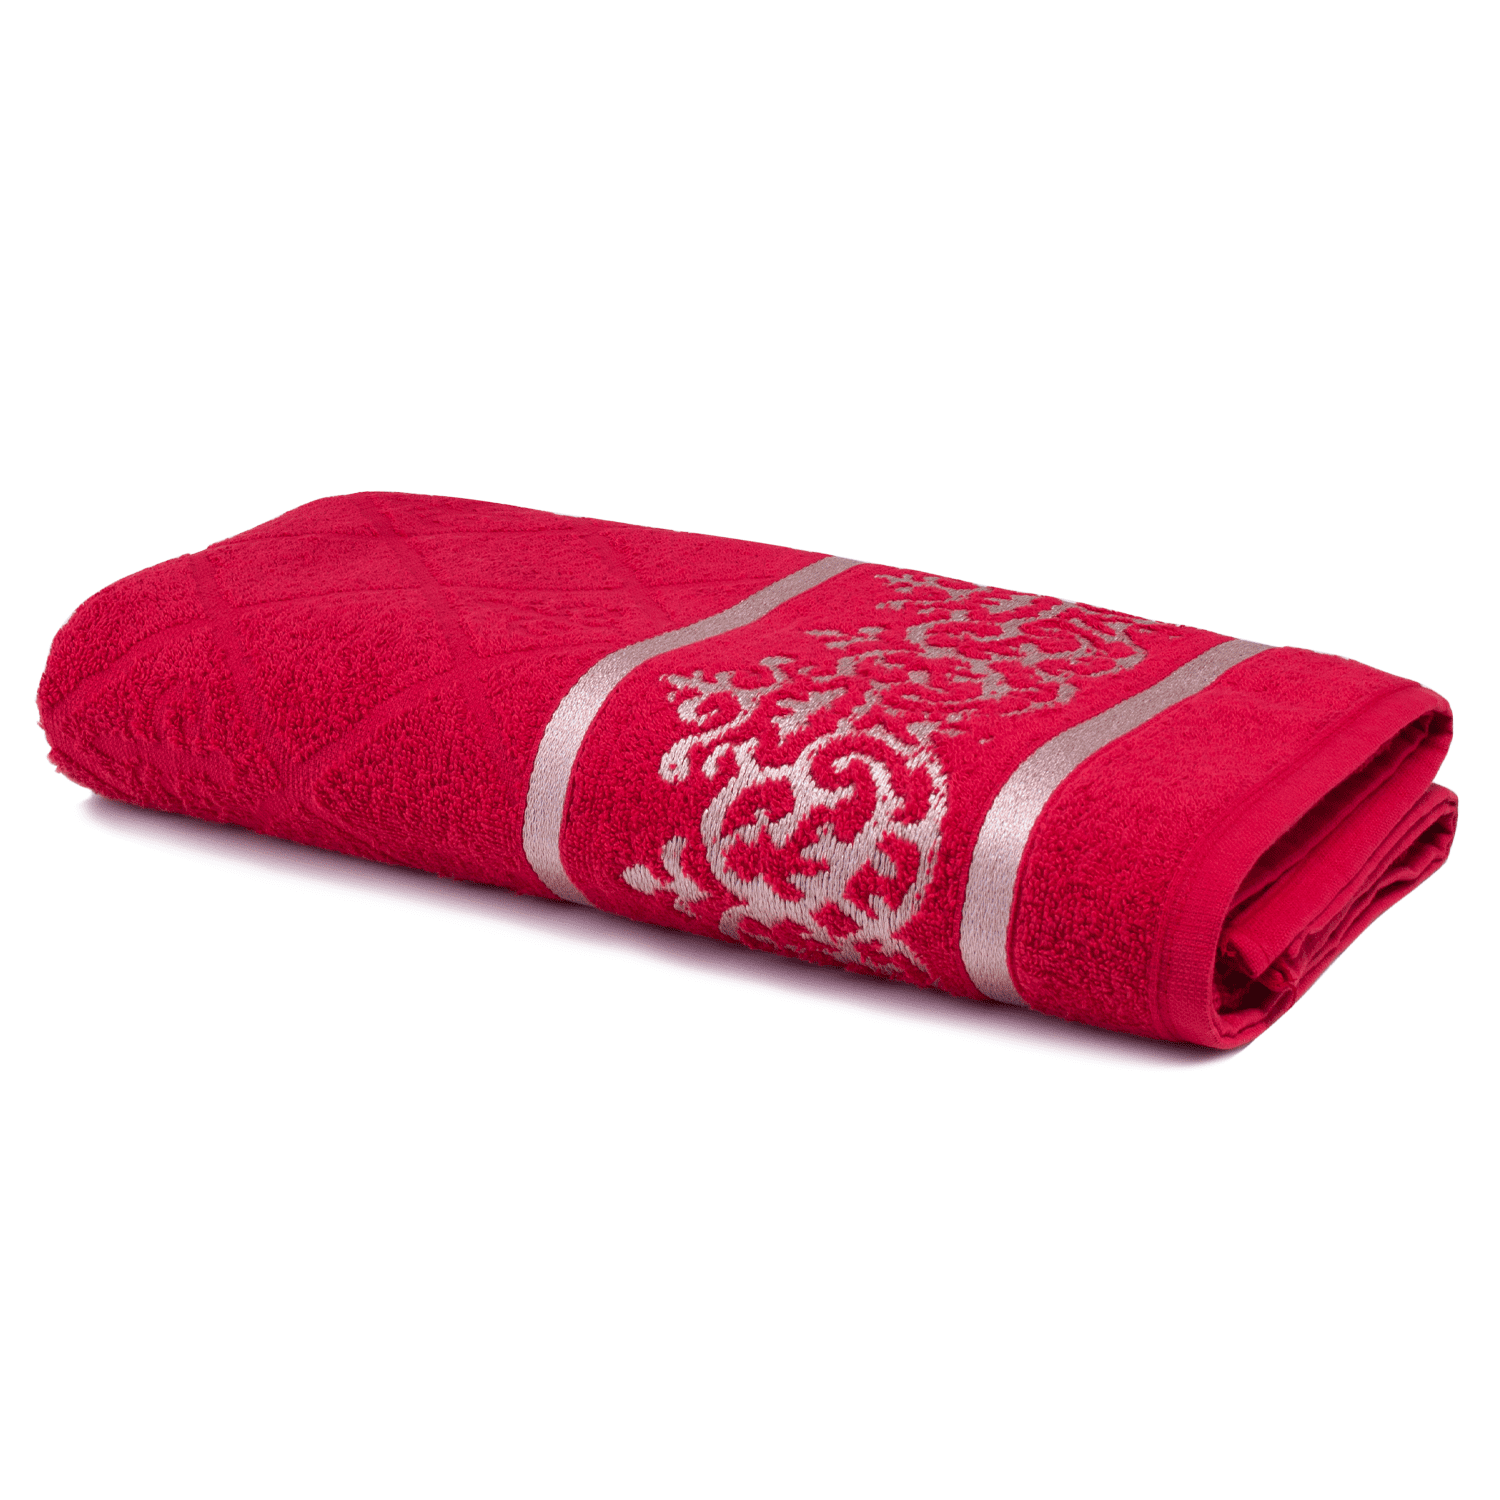 https://www.casaencanto.com.br/static/60591/sku/banho-toalhas-de-banho-toalha-de-banho-gigante-dubai-160-x-76-cm-vermelho-1614976020377.png